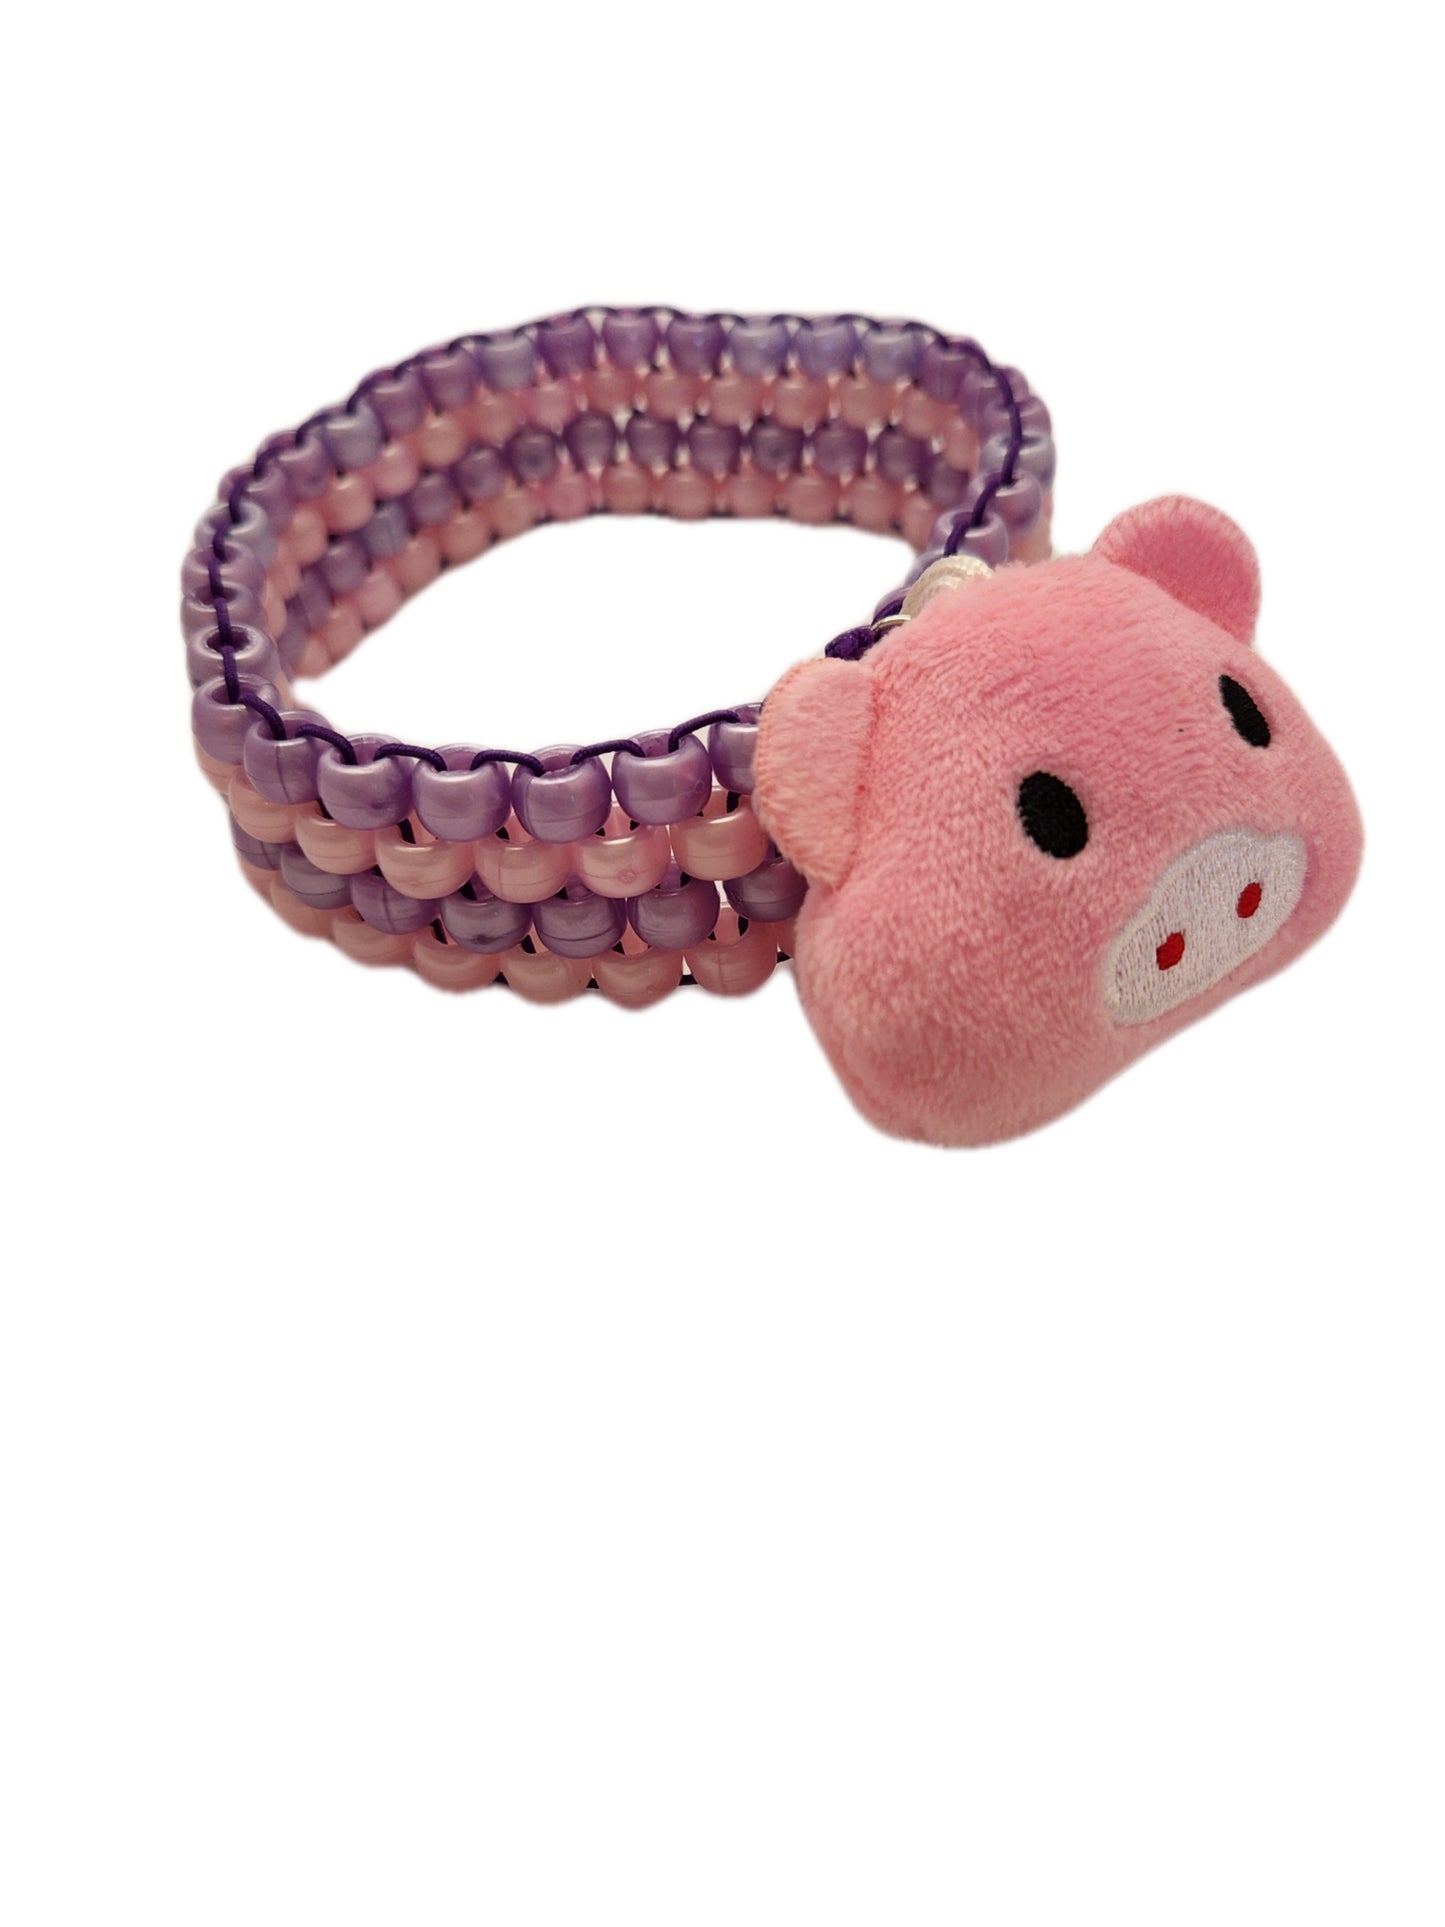 Little Pig Bicep Kandi Armband Cuff